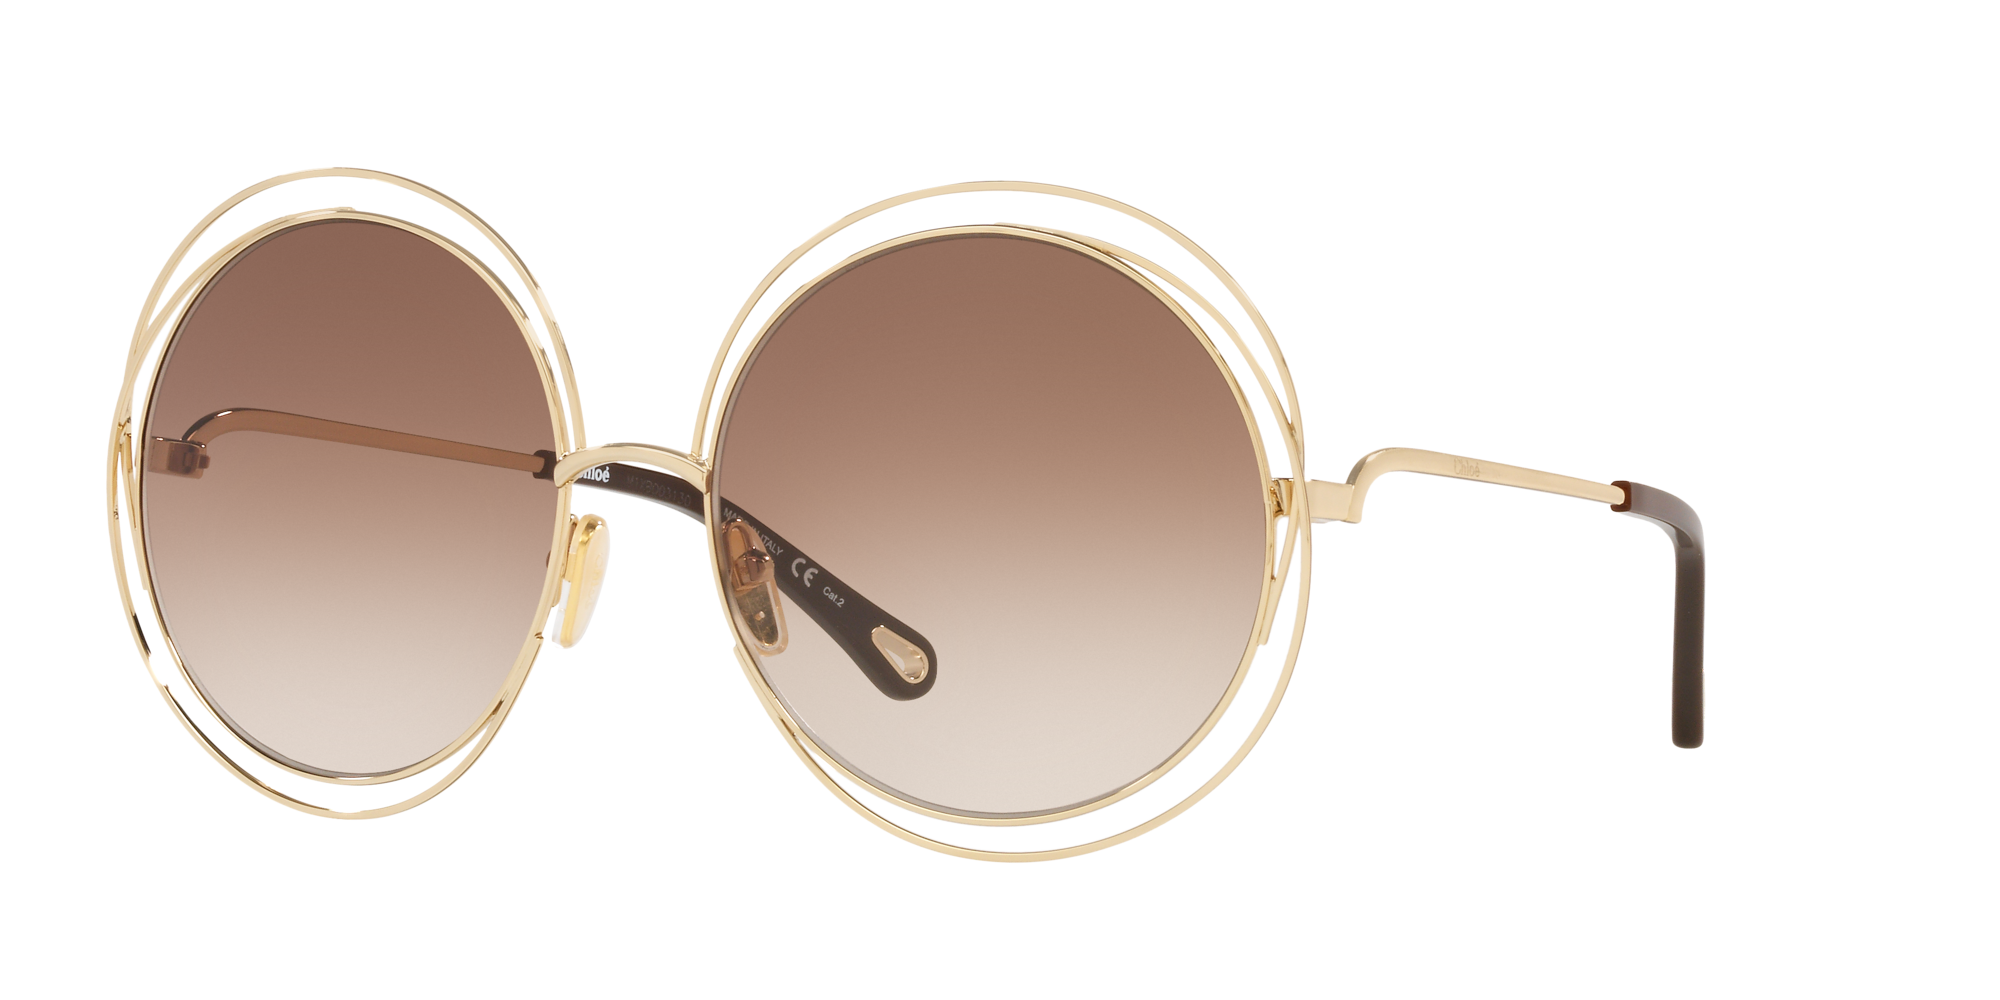 Chloé Unisex Sunglasses, Ch0045s In Brown Grad